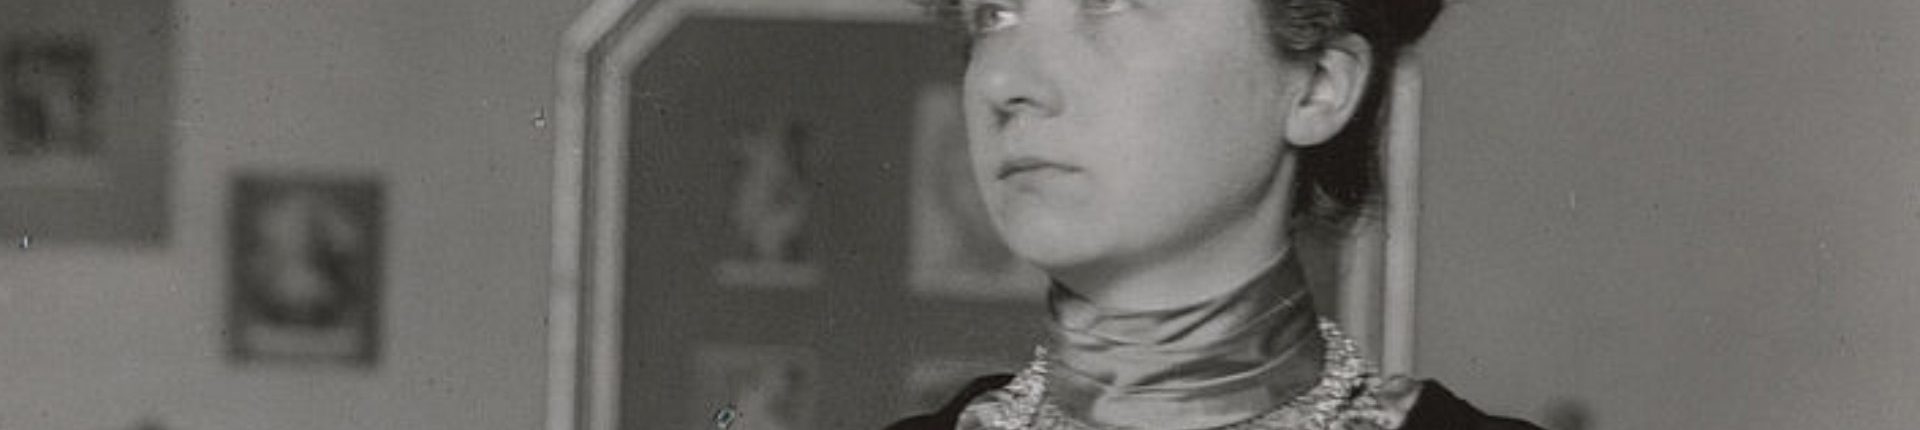 Gabriele Münter, pionnière de l’art moderne